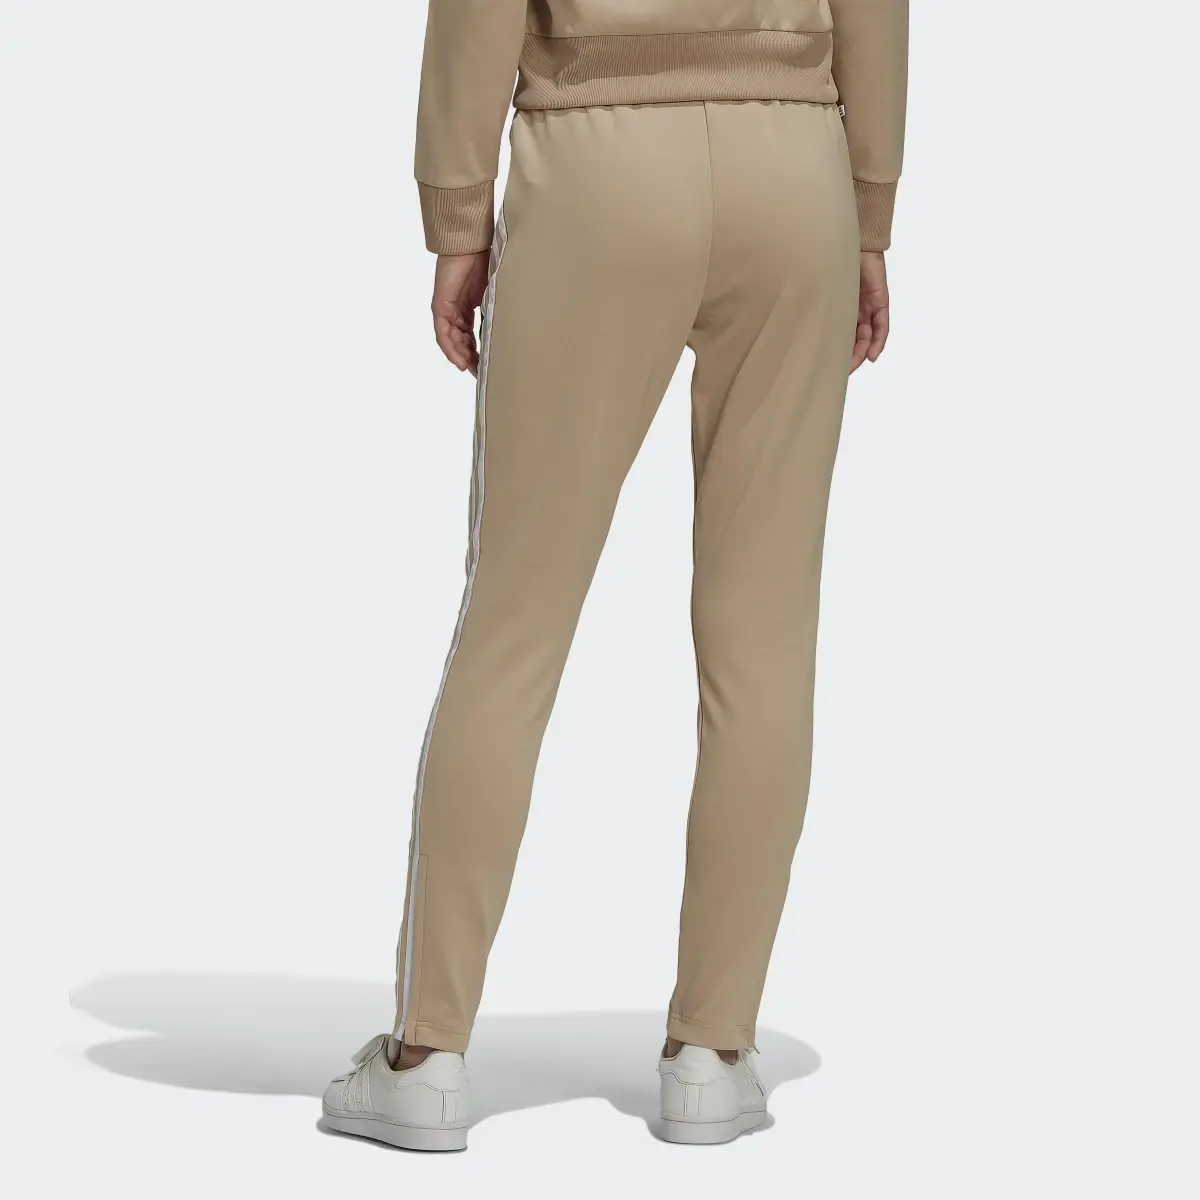 Adidas Pantalon de survêtement Primeblue SST. 2